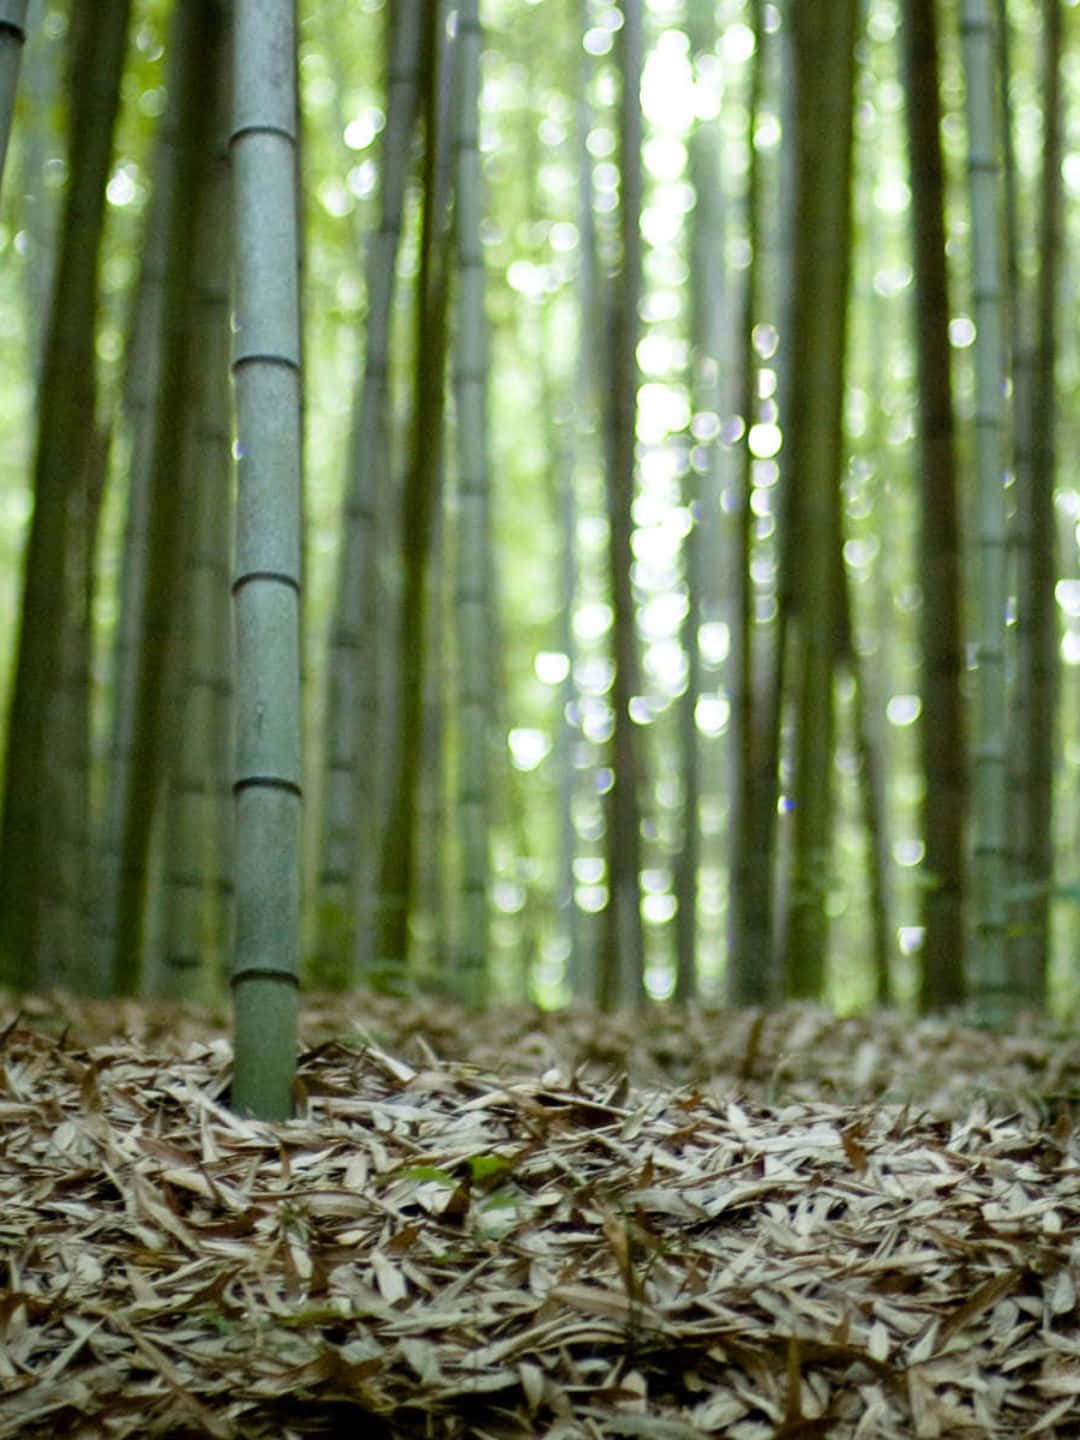 Fundode Tela Bambu 1440p Com Folhas Secas No Chão